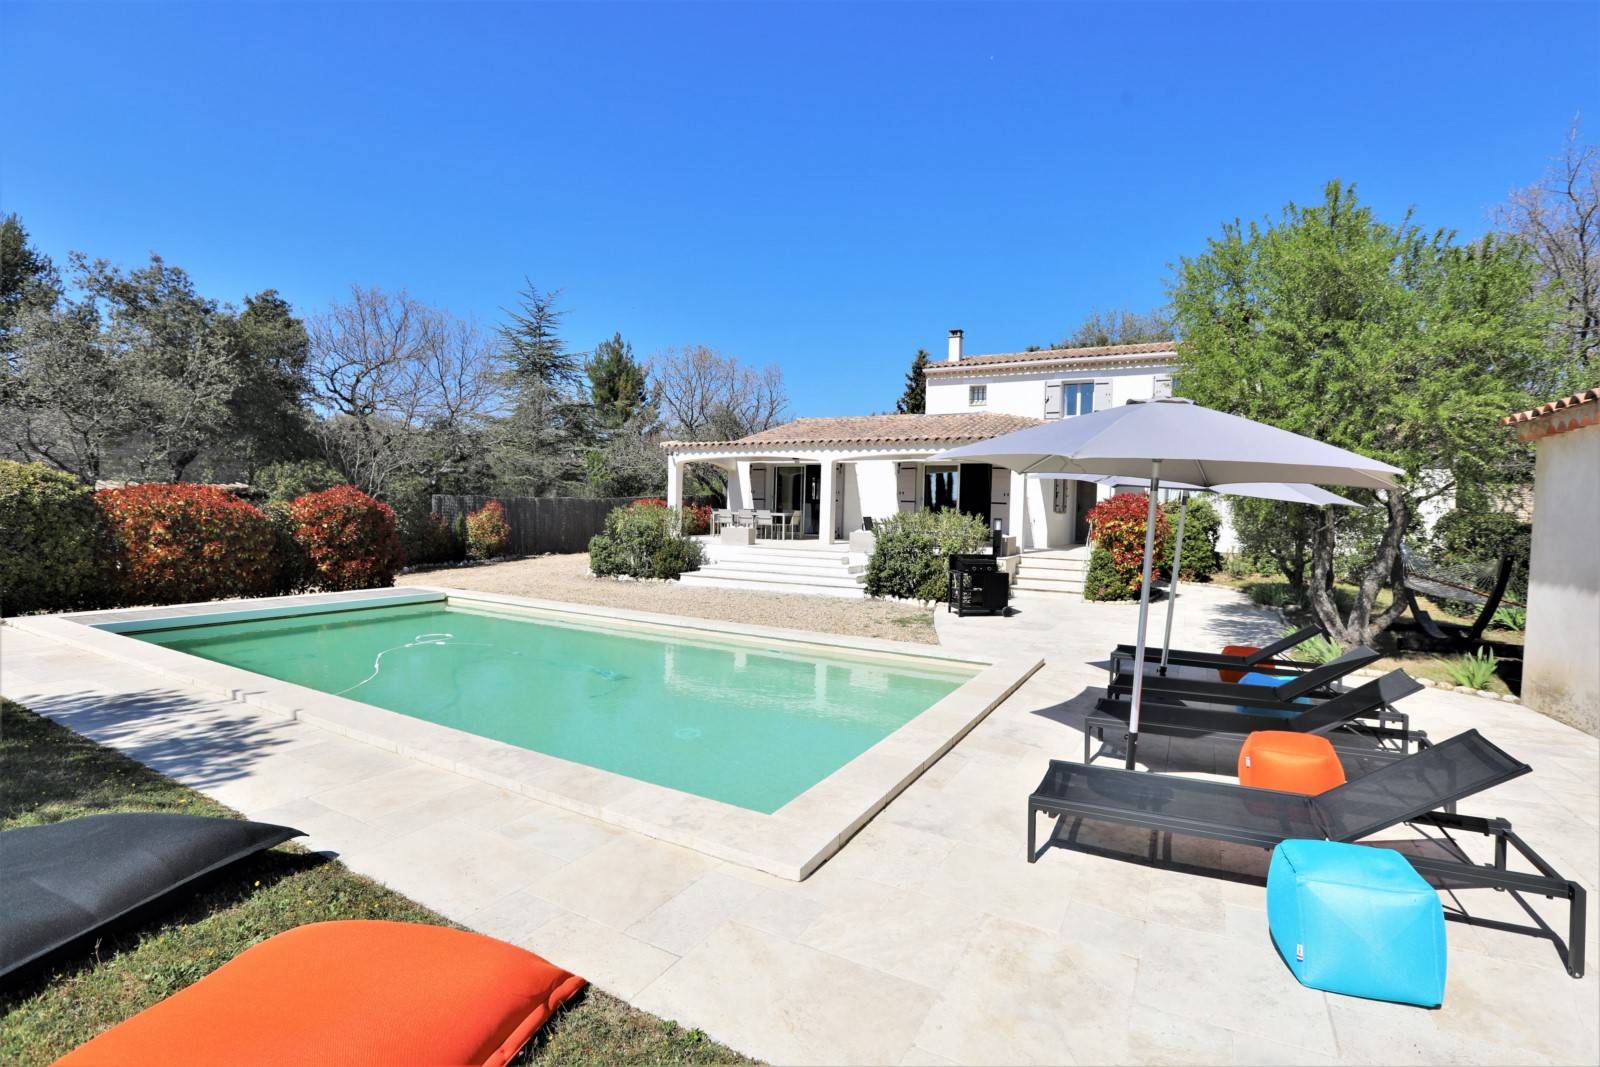 Location à Cabrières d’Avignon, superbe maison récente avec piscine. Idéalement située dans un quartier résidentiel.